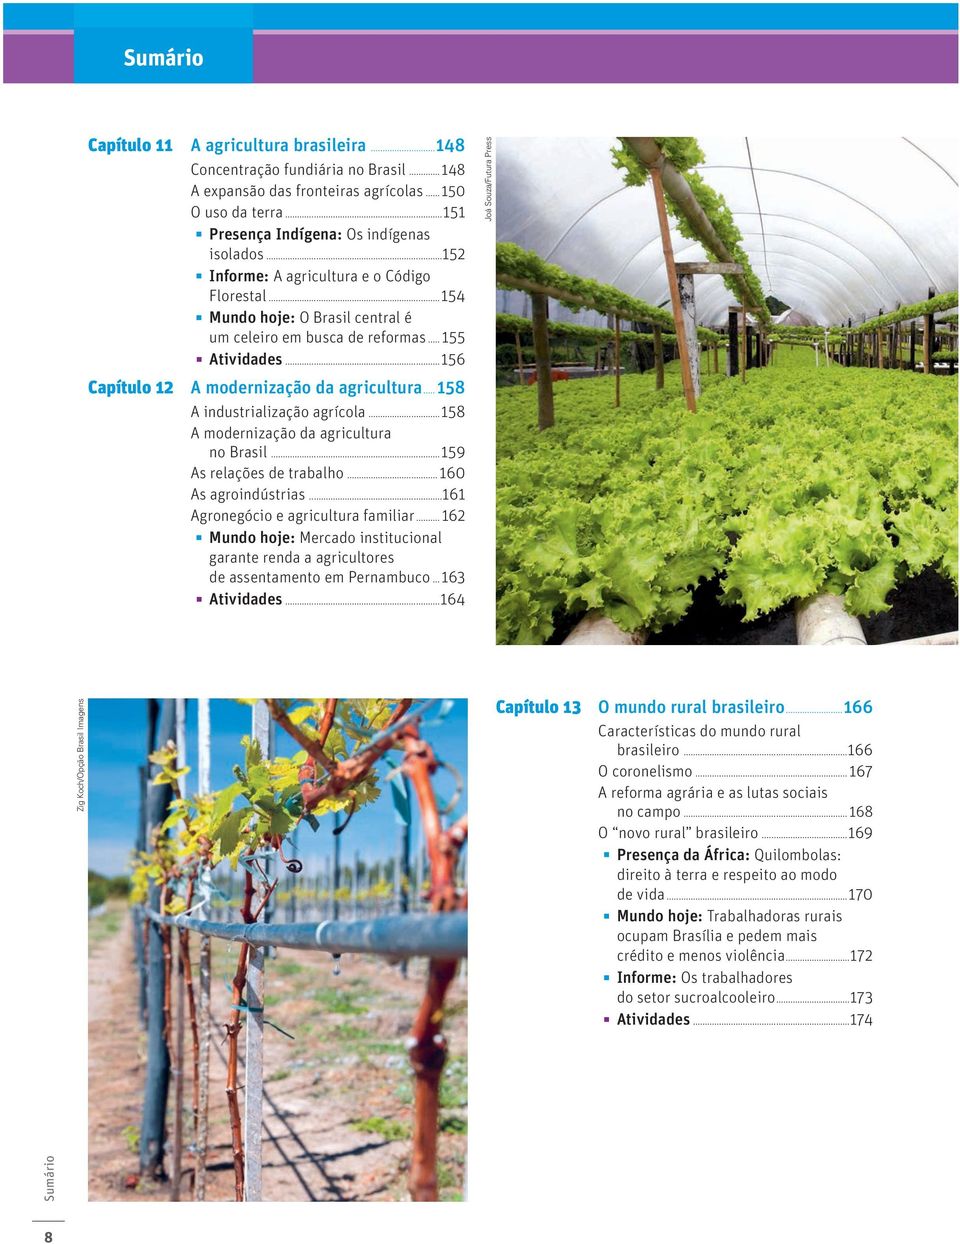 ..158 A industrialização agrícola...158 A modernização da agricultura no Brasil...159 As relações de trabalho... 160 As agroindústrias...161 Agronegócio e agricultura familiar.